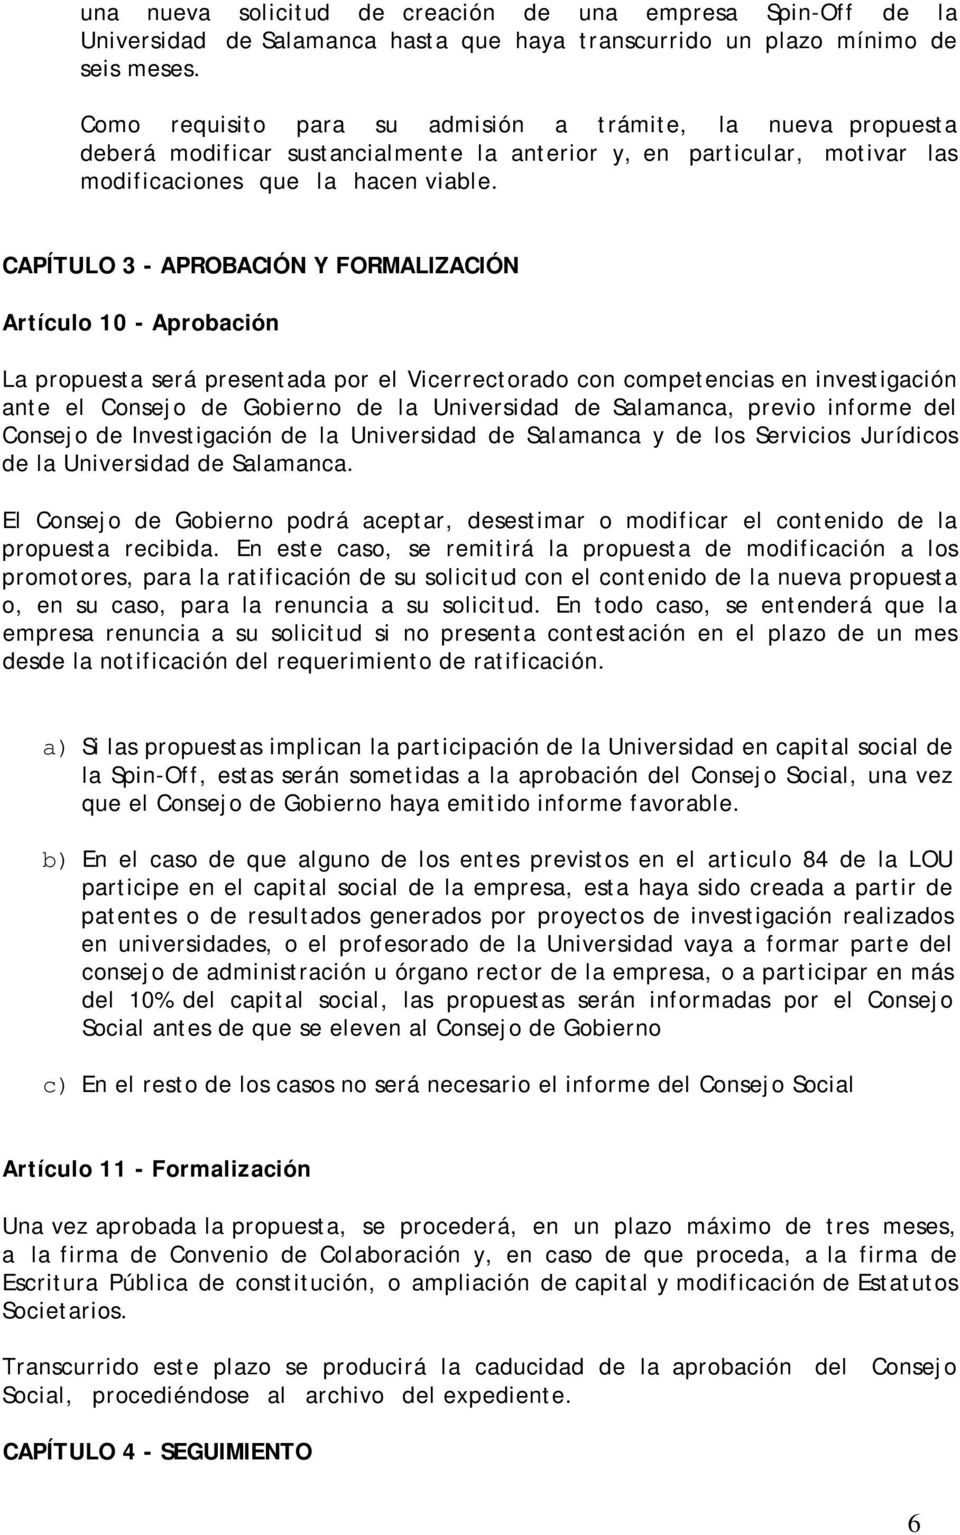 CAPÍTULO 3 - APROBACIÓN Y FORMALIZACIÓN Artículo 10 - Aprobación La propuesta será presentada por el Vicerrectorado con competencias en investigación ante el Consejo de Gobierno de la Universidad de